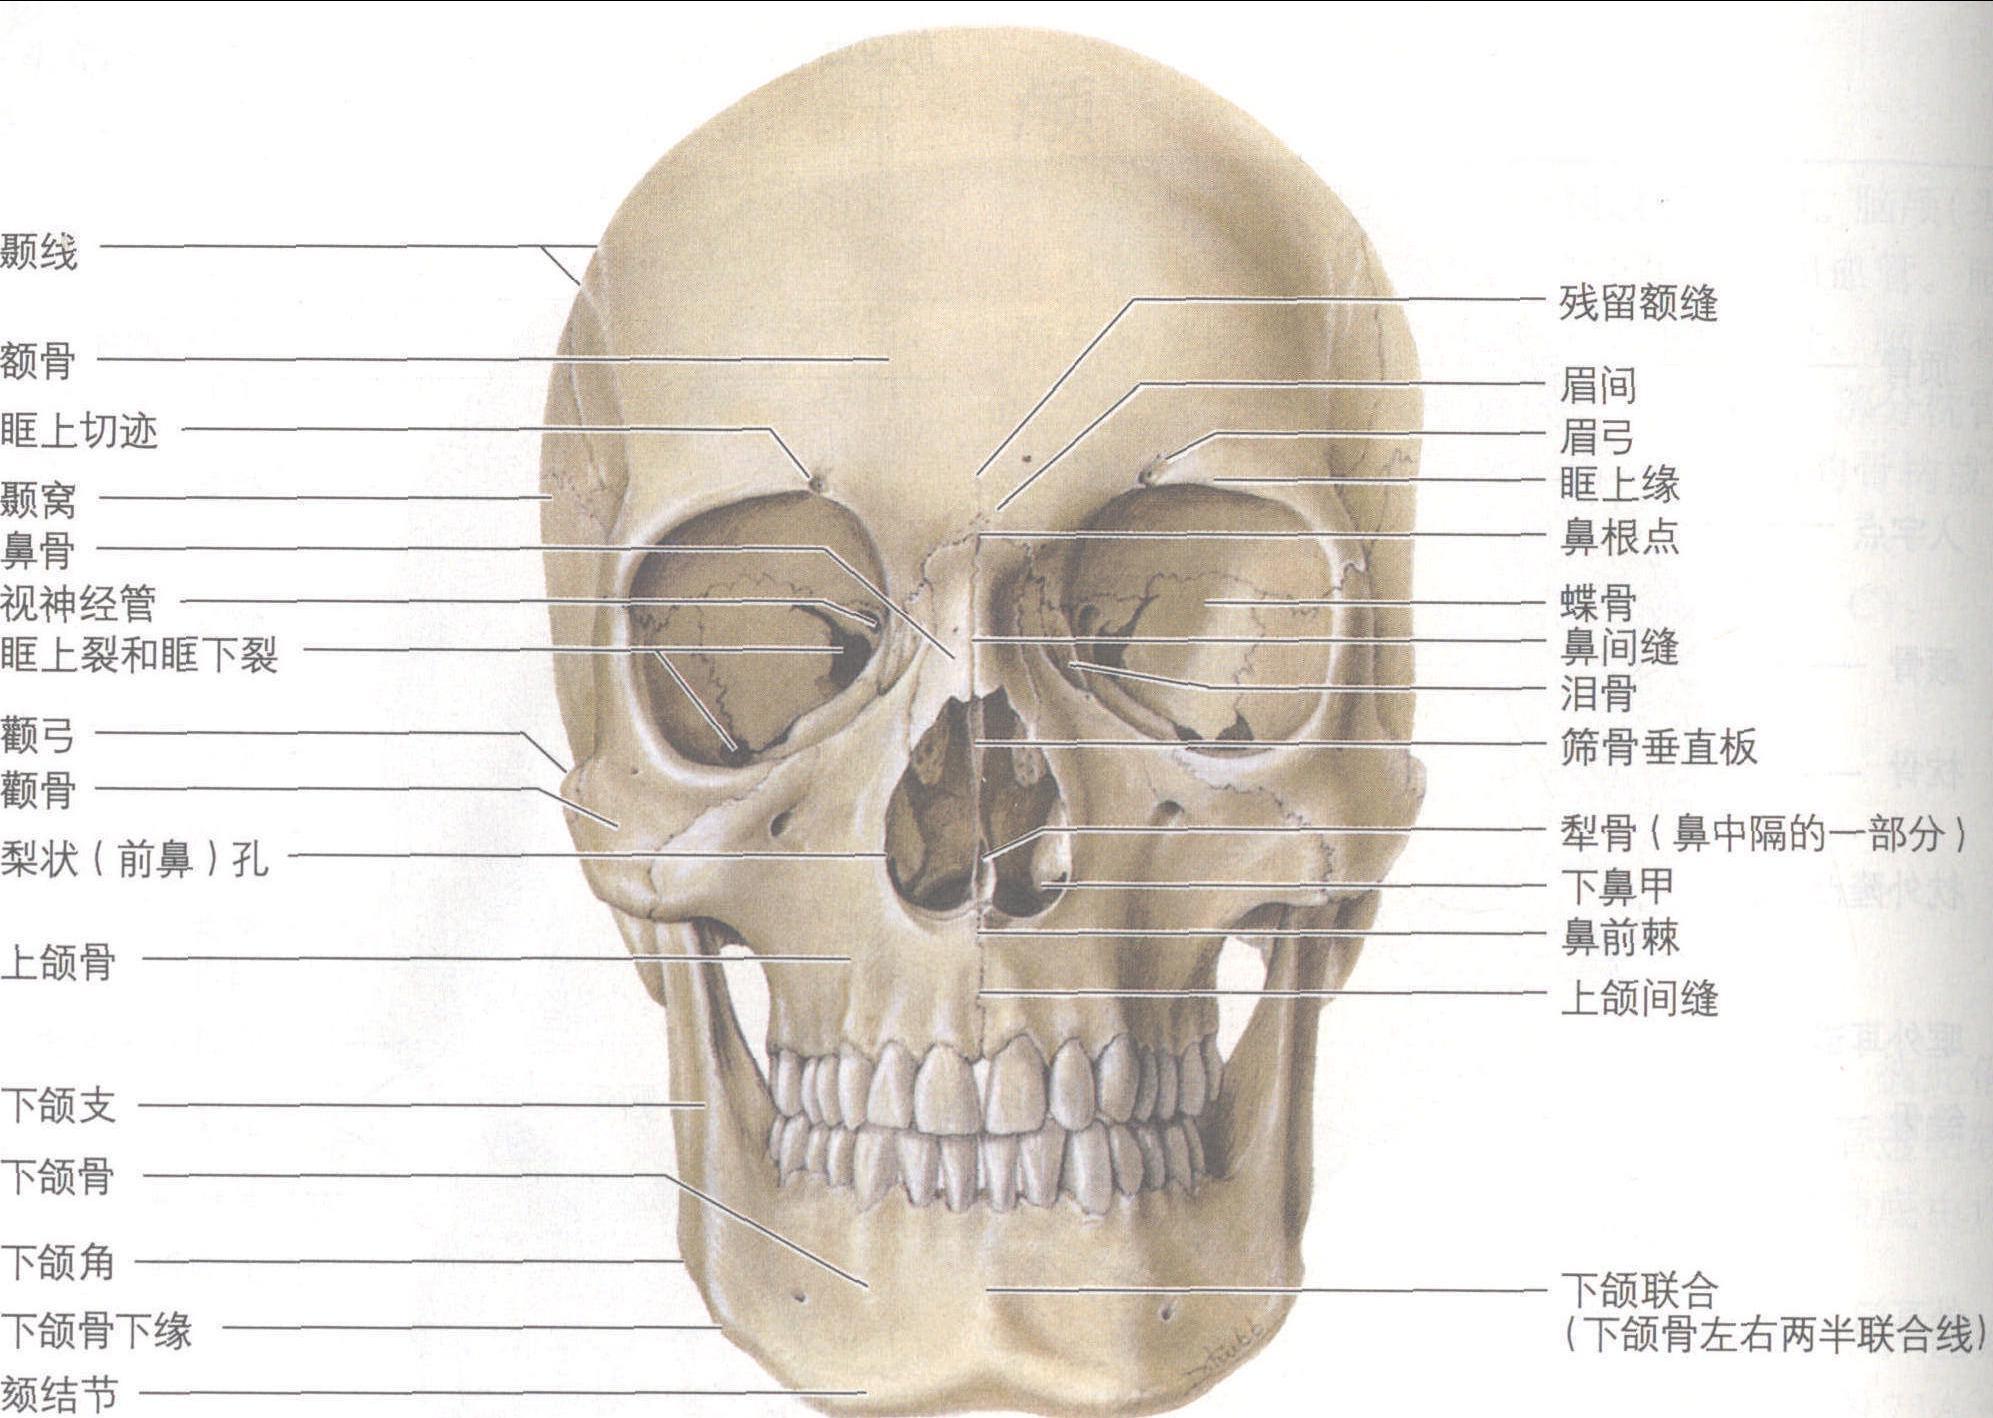 颅骨与皮质重要功能区颅骨测量 - 脑医汇 - 神外资讯 - 神介资讯